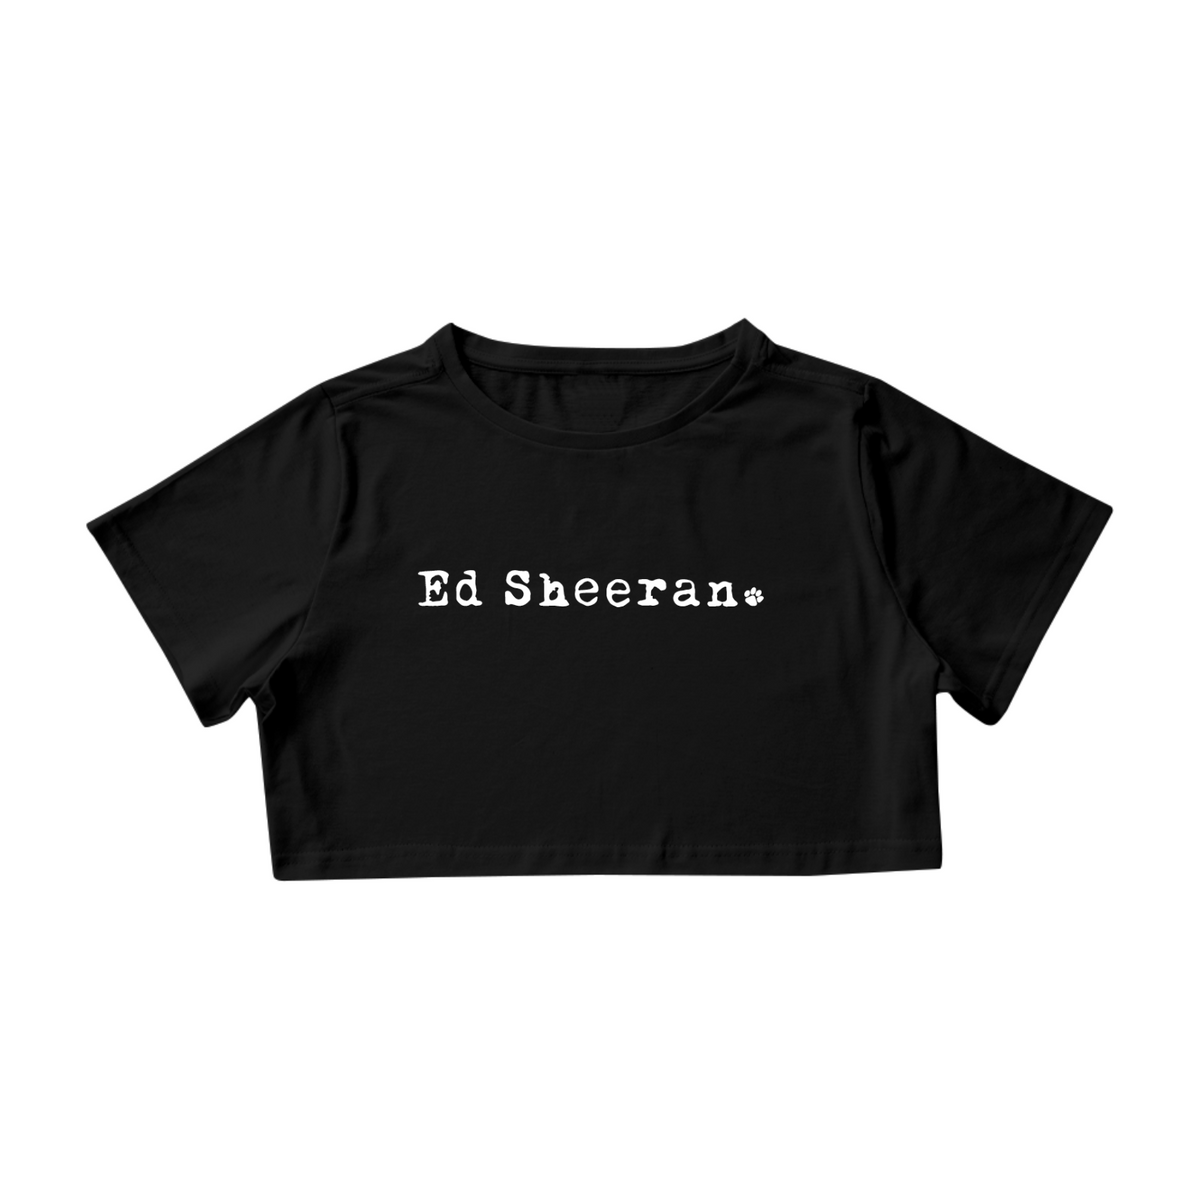 Nome do produto: Cropped - Ed Sheeran